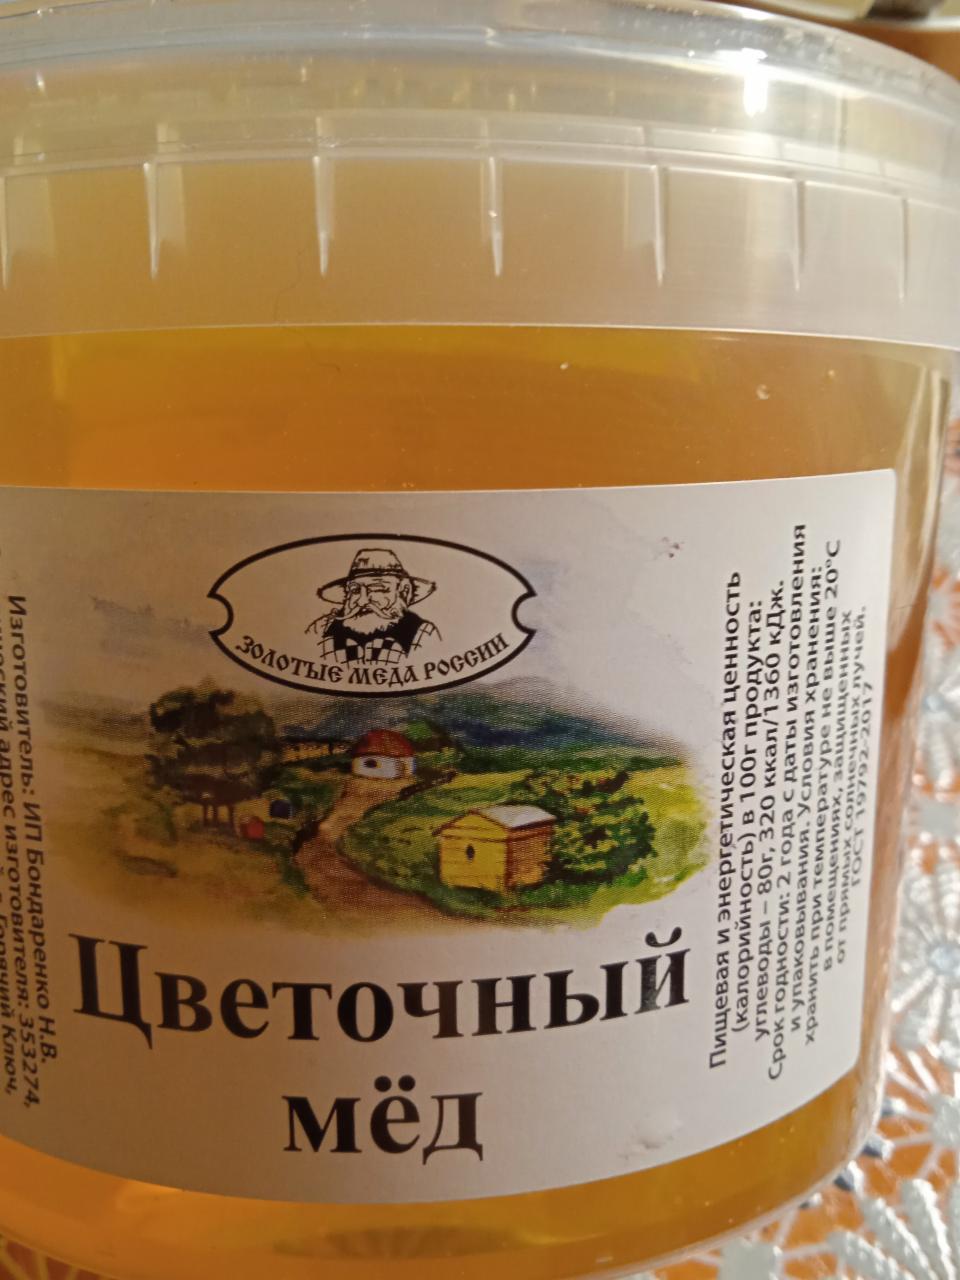 Фото - Цветочный мёд Золотые меда России